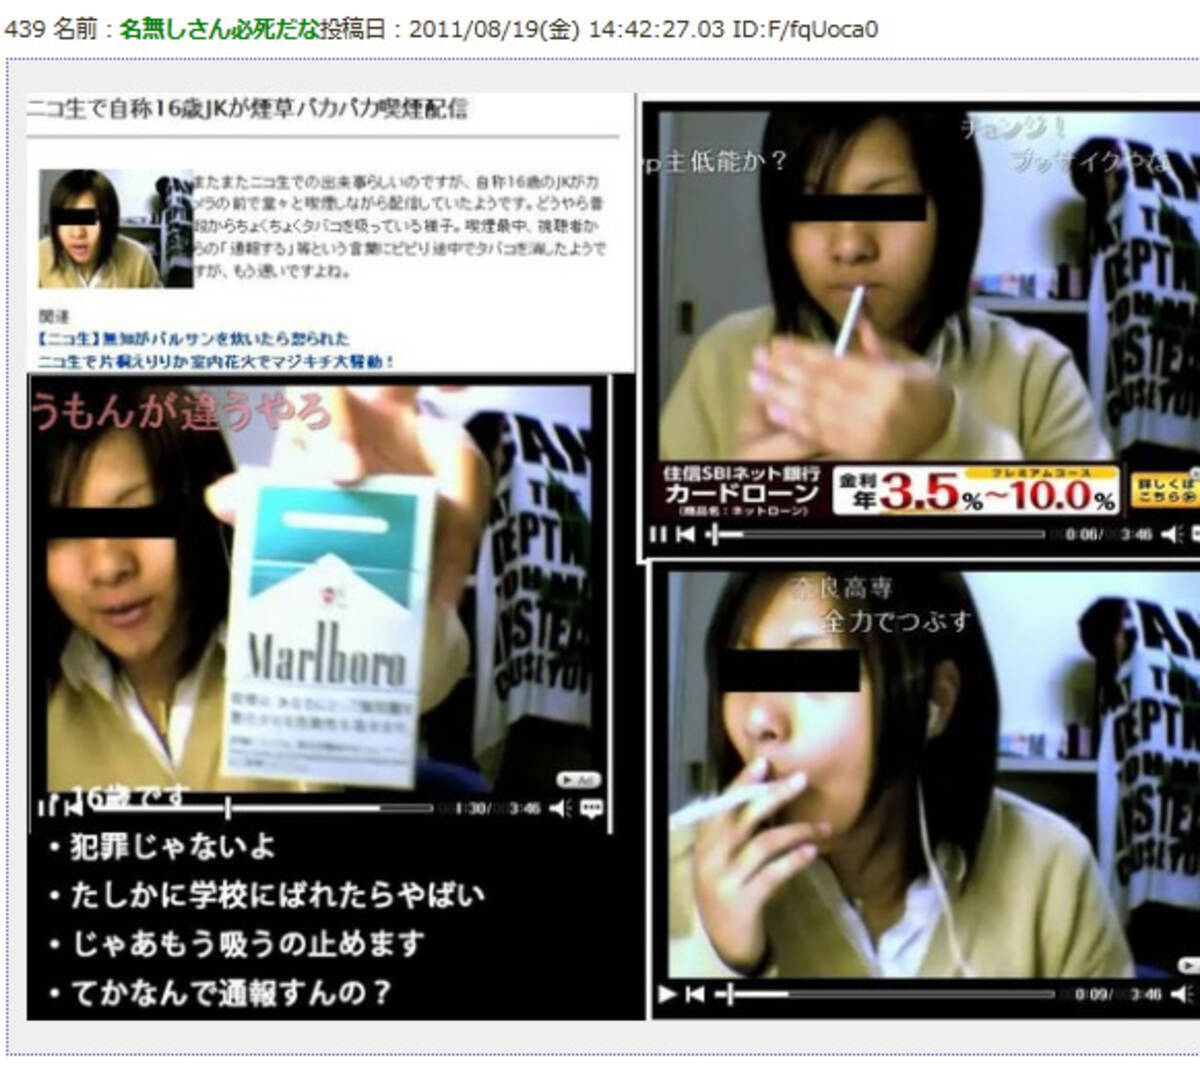 インターネット生放送で女子高生が喫煙を放送か ネットの声 吸ってる自分に酔ってる 11年8月21日 エキサイトニュース